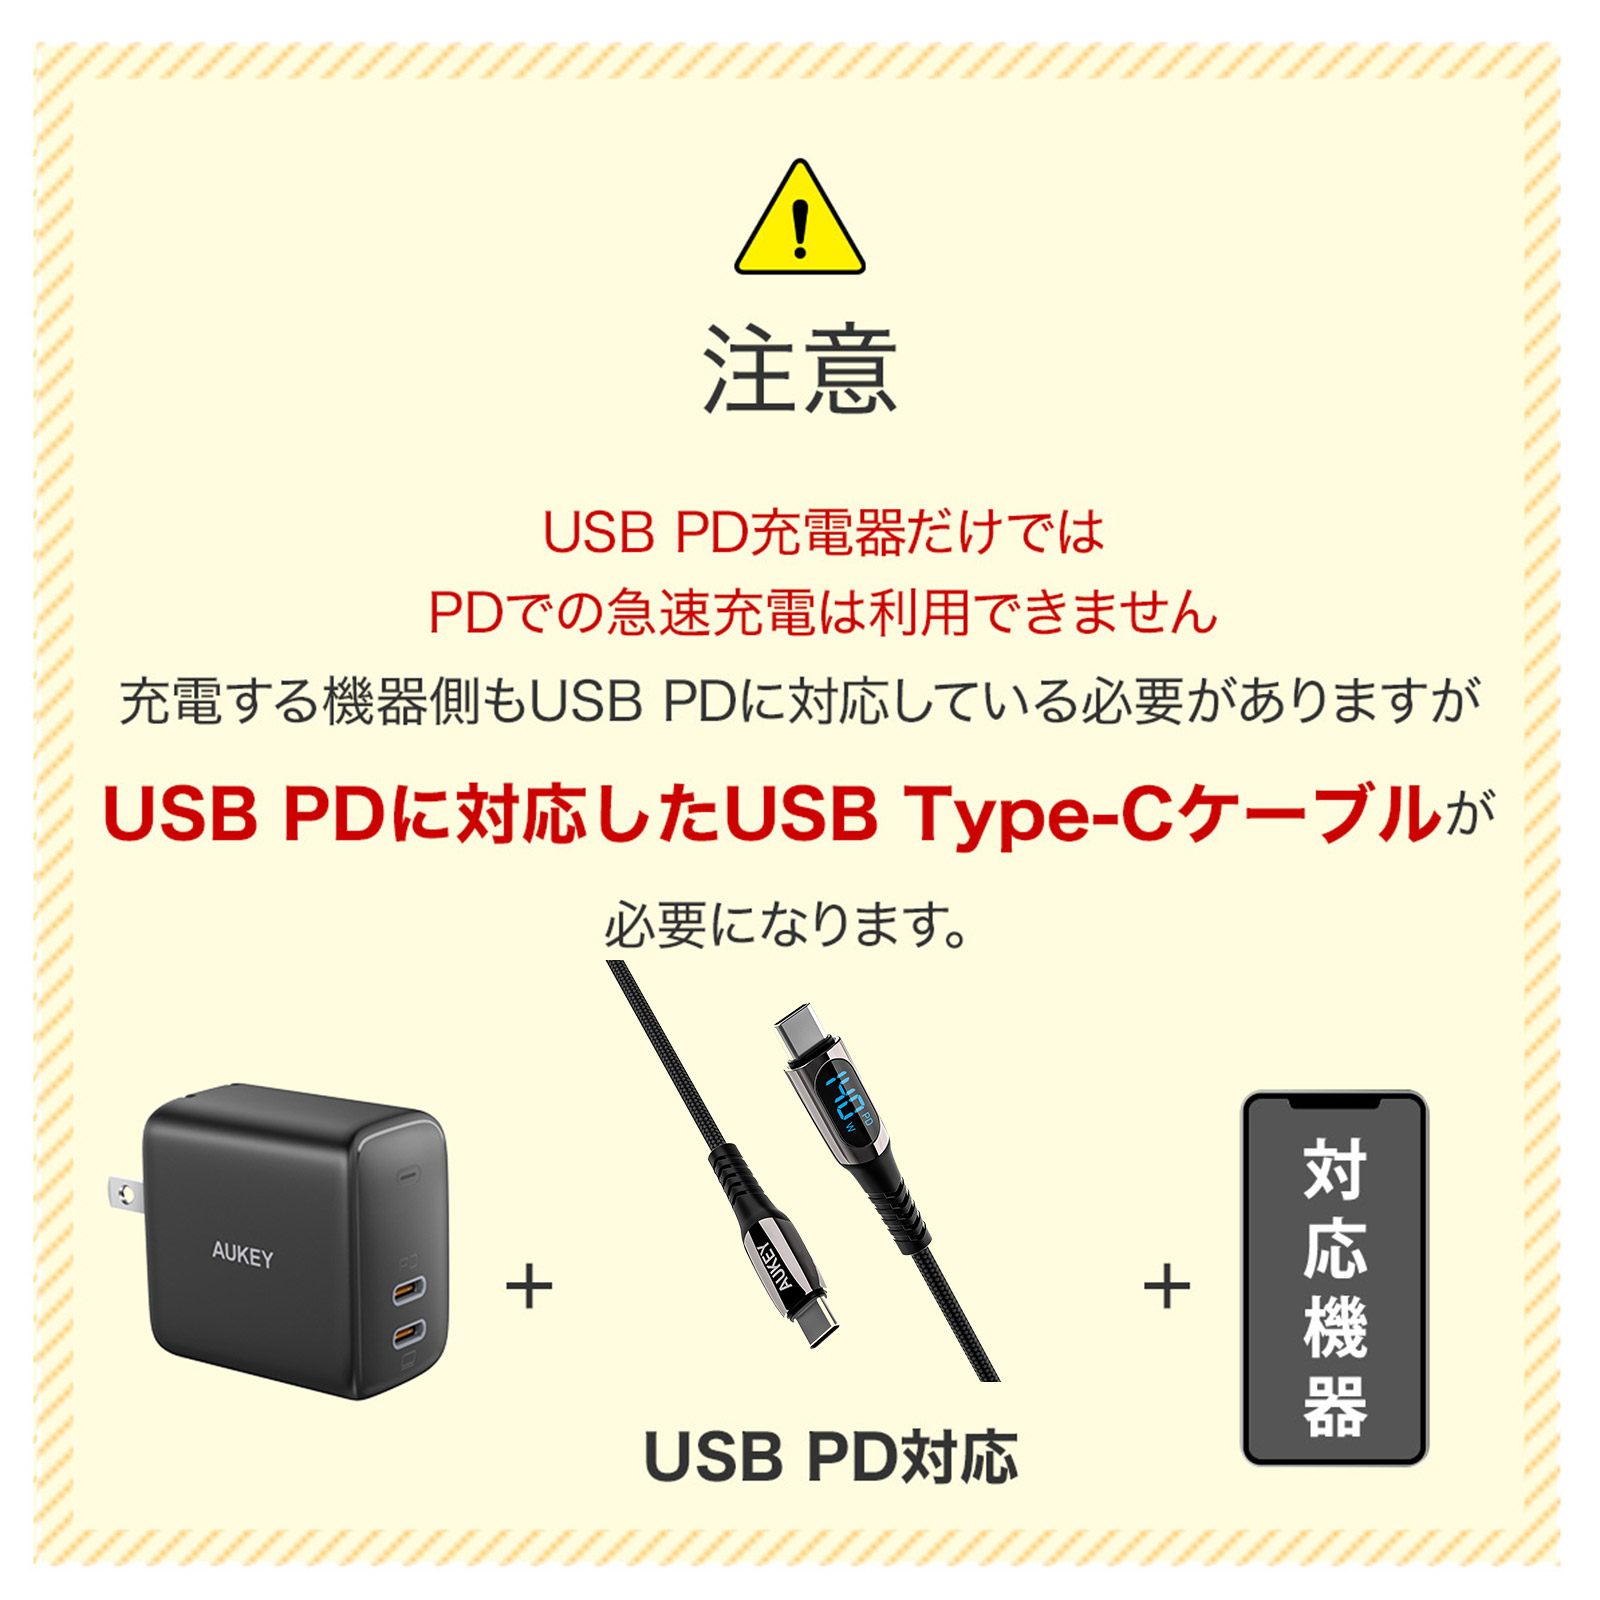 （注意）USB PD充電器だけではPDでの急速充電は利用できません。USB PDに対応したUSB Type-Cケーブルが必要になります。